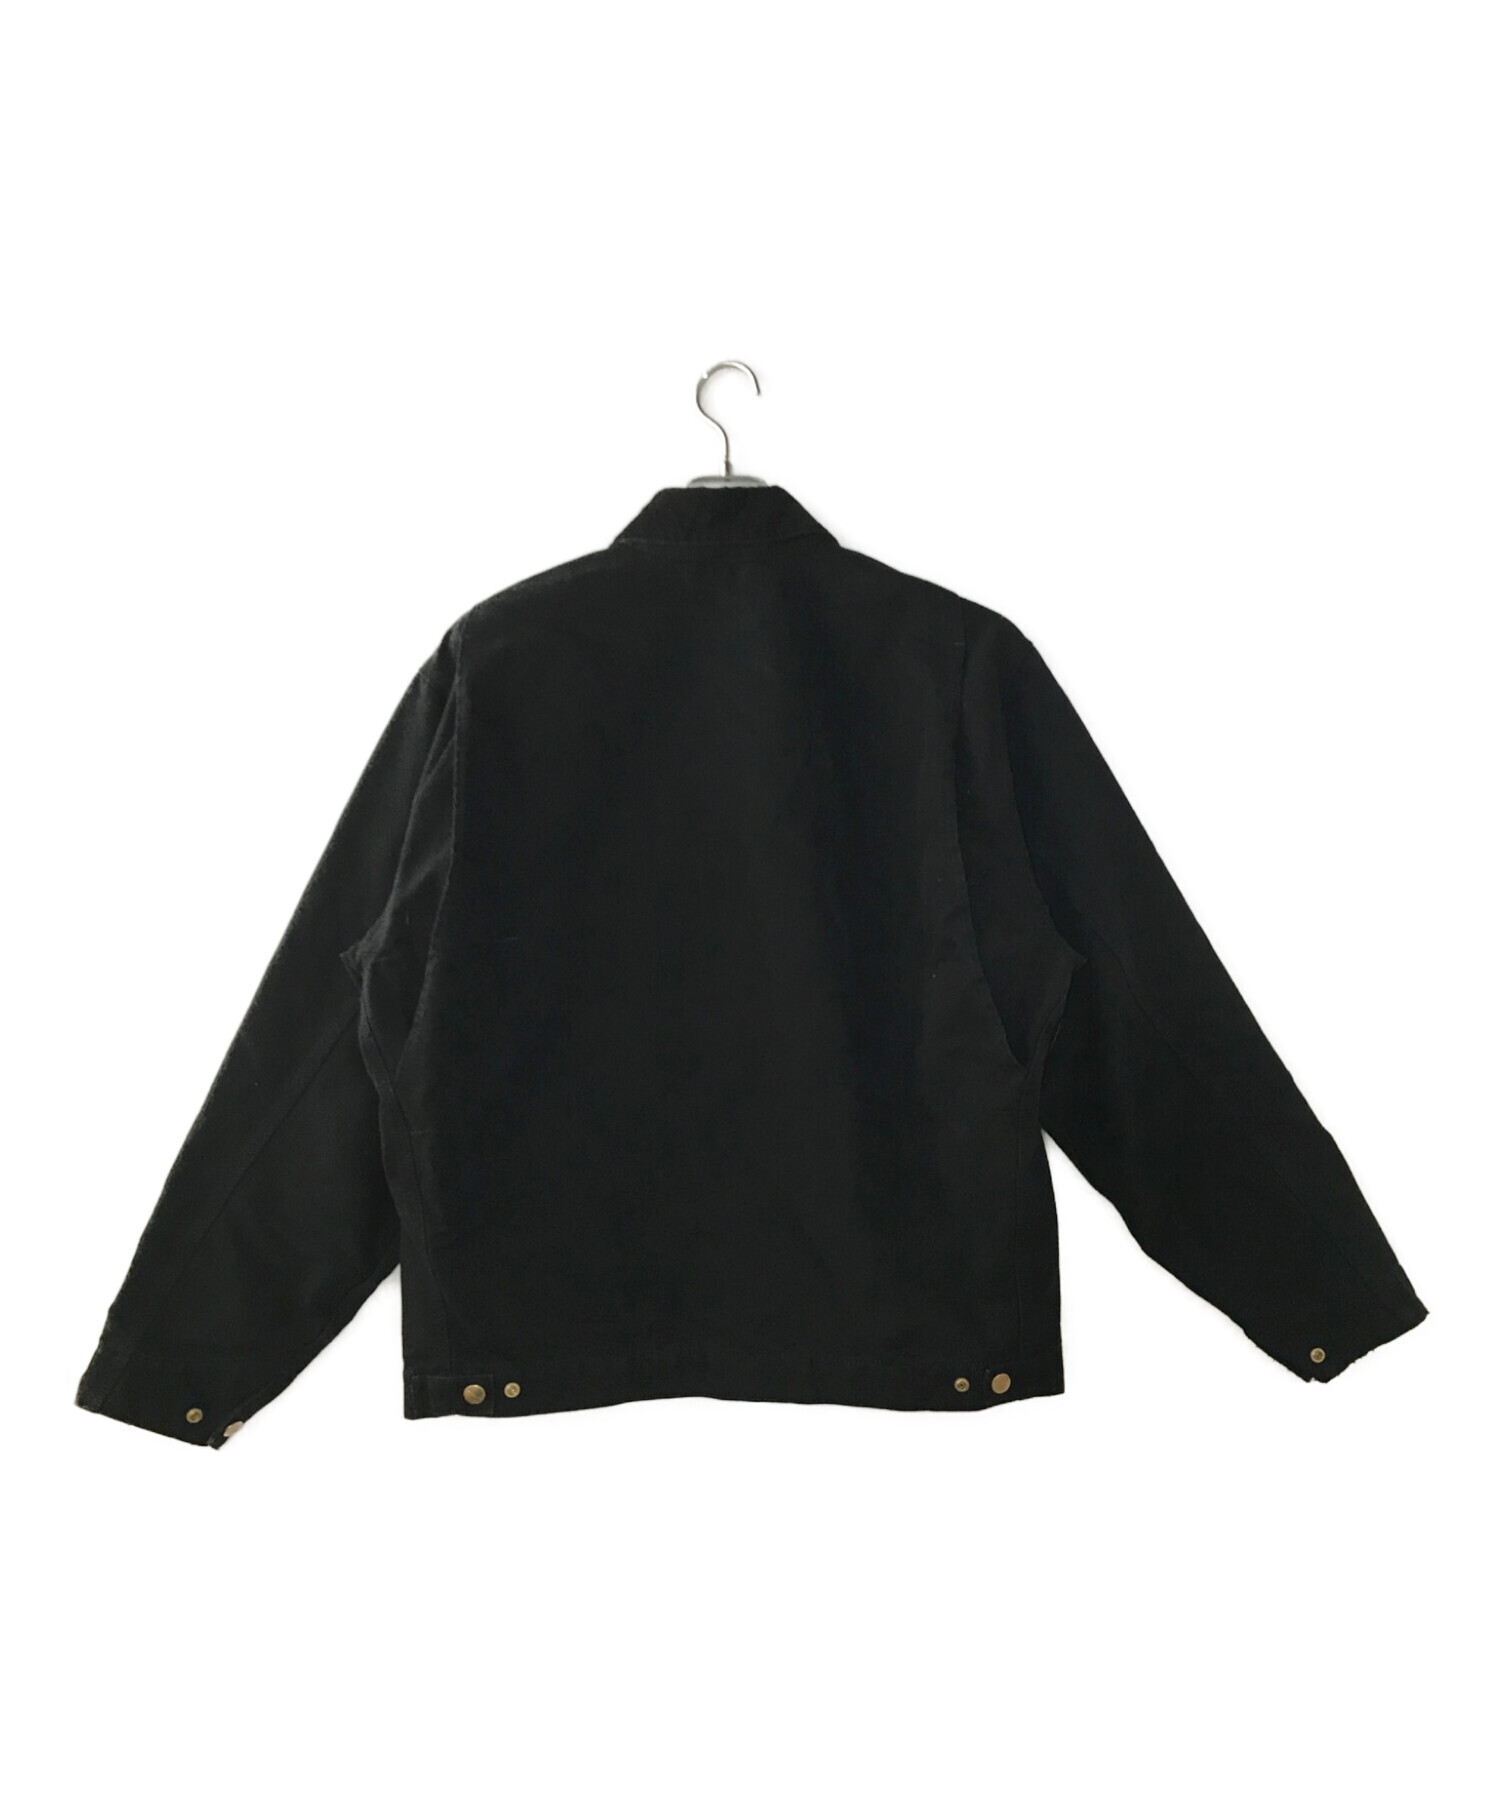 CarHartt (カーハート) デトロイトジャケット ブラック サイズ:L